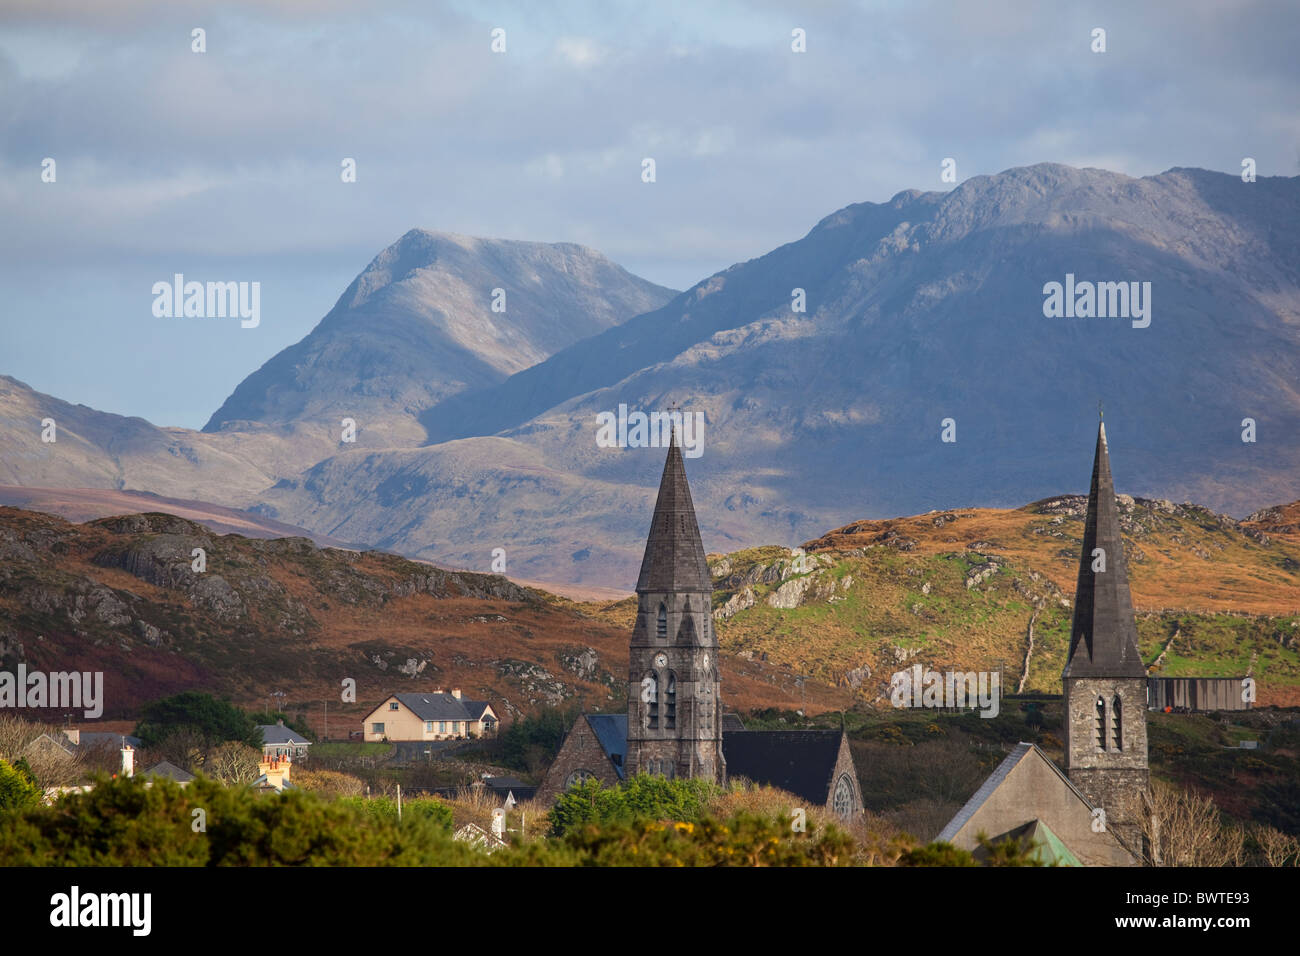 Clochers de la ville de Clifden, Connemara en Irlande, avec les montagnes Twelve Bens à l'arrière-plan Banque D'Images